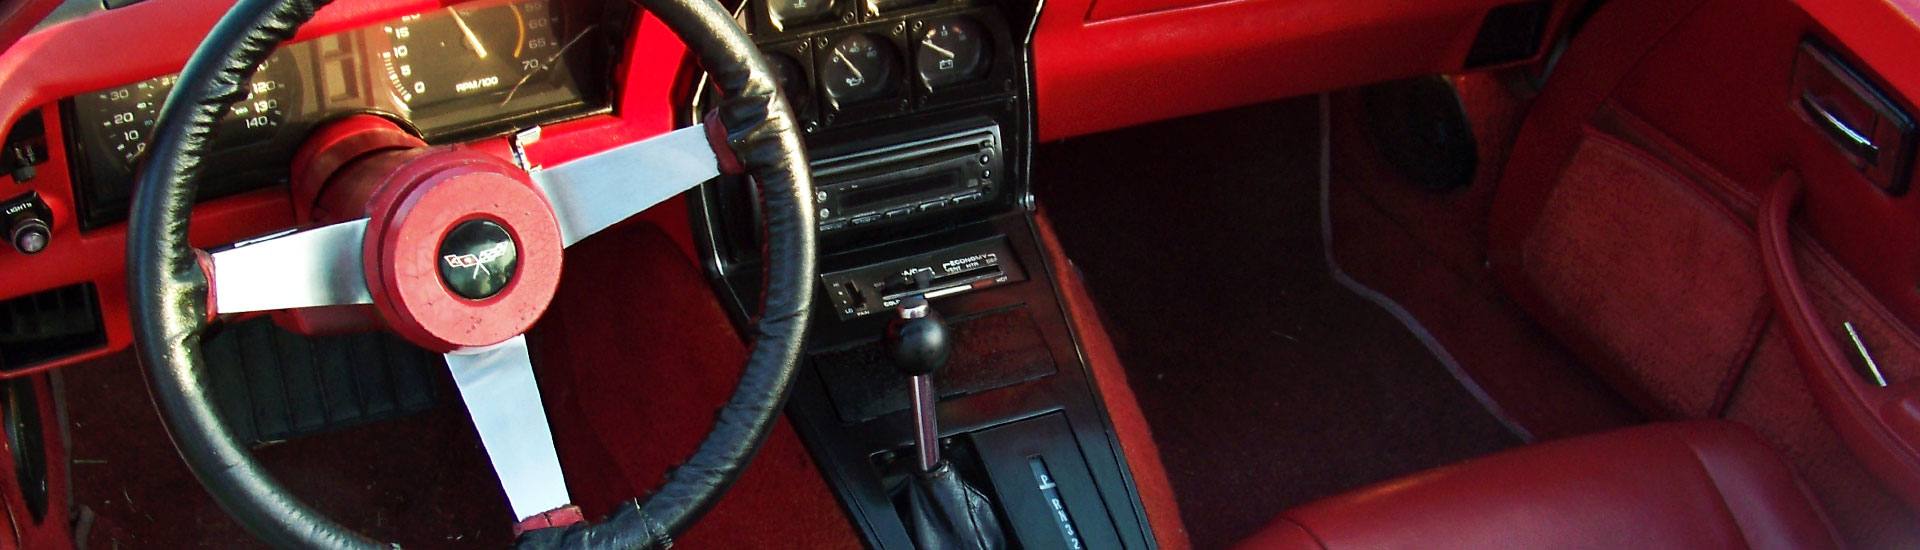 1979 Chevrolet Corvette Dash Kits